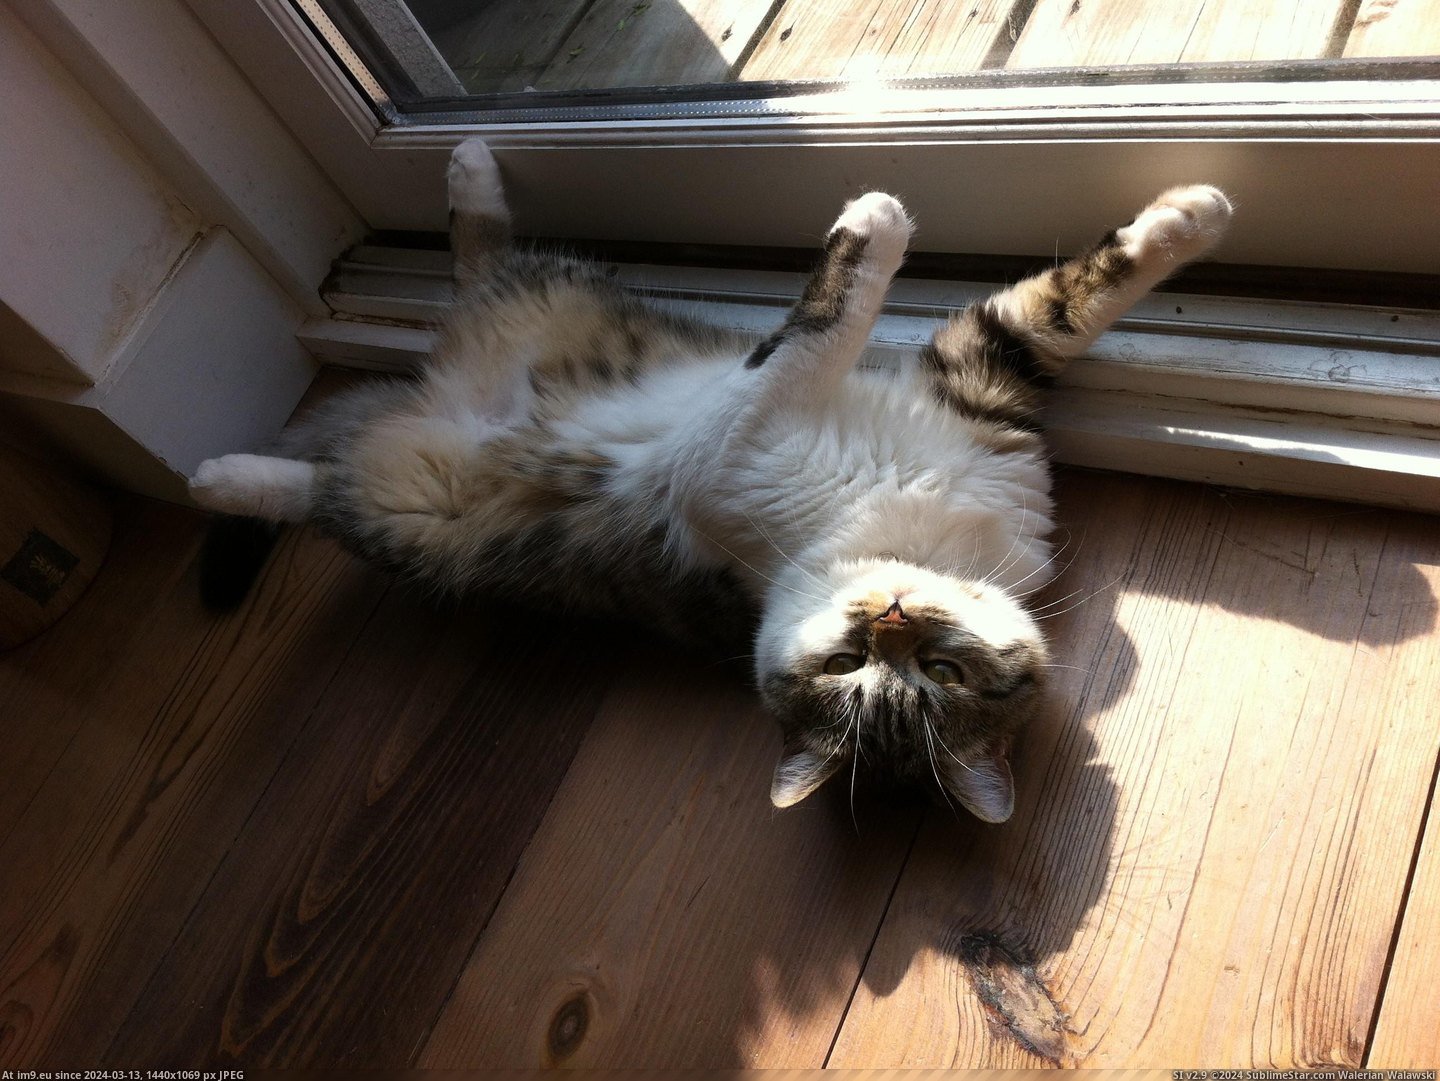 #Cats #Weird #Sleeps #Cat [Cats] My cat sleeps weird. 12 Pic. (Image of album My r/CATS favs))